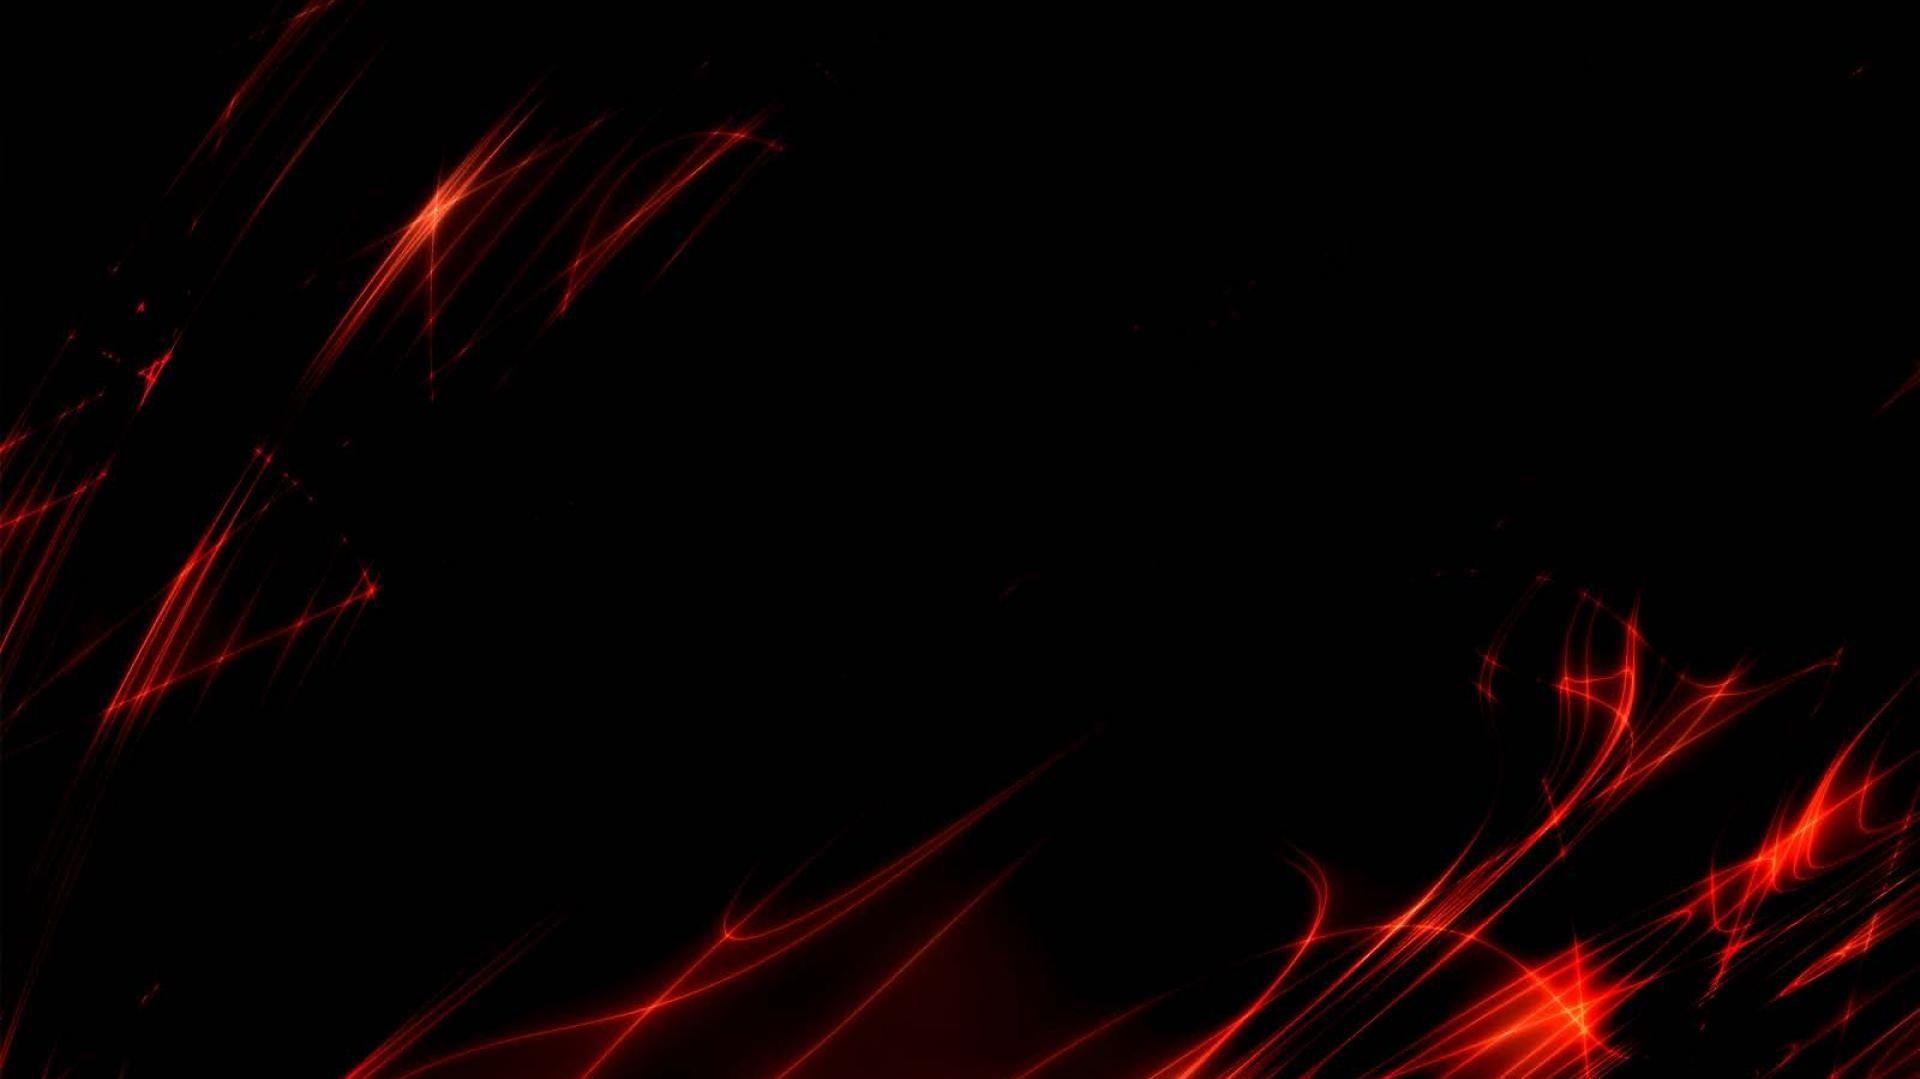 Top Dark Red Desktop Wallpaper Full HD 1080p For Pc